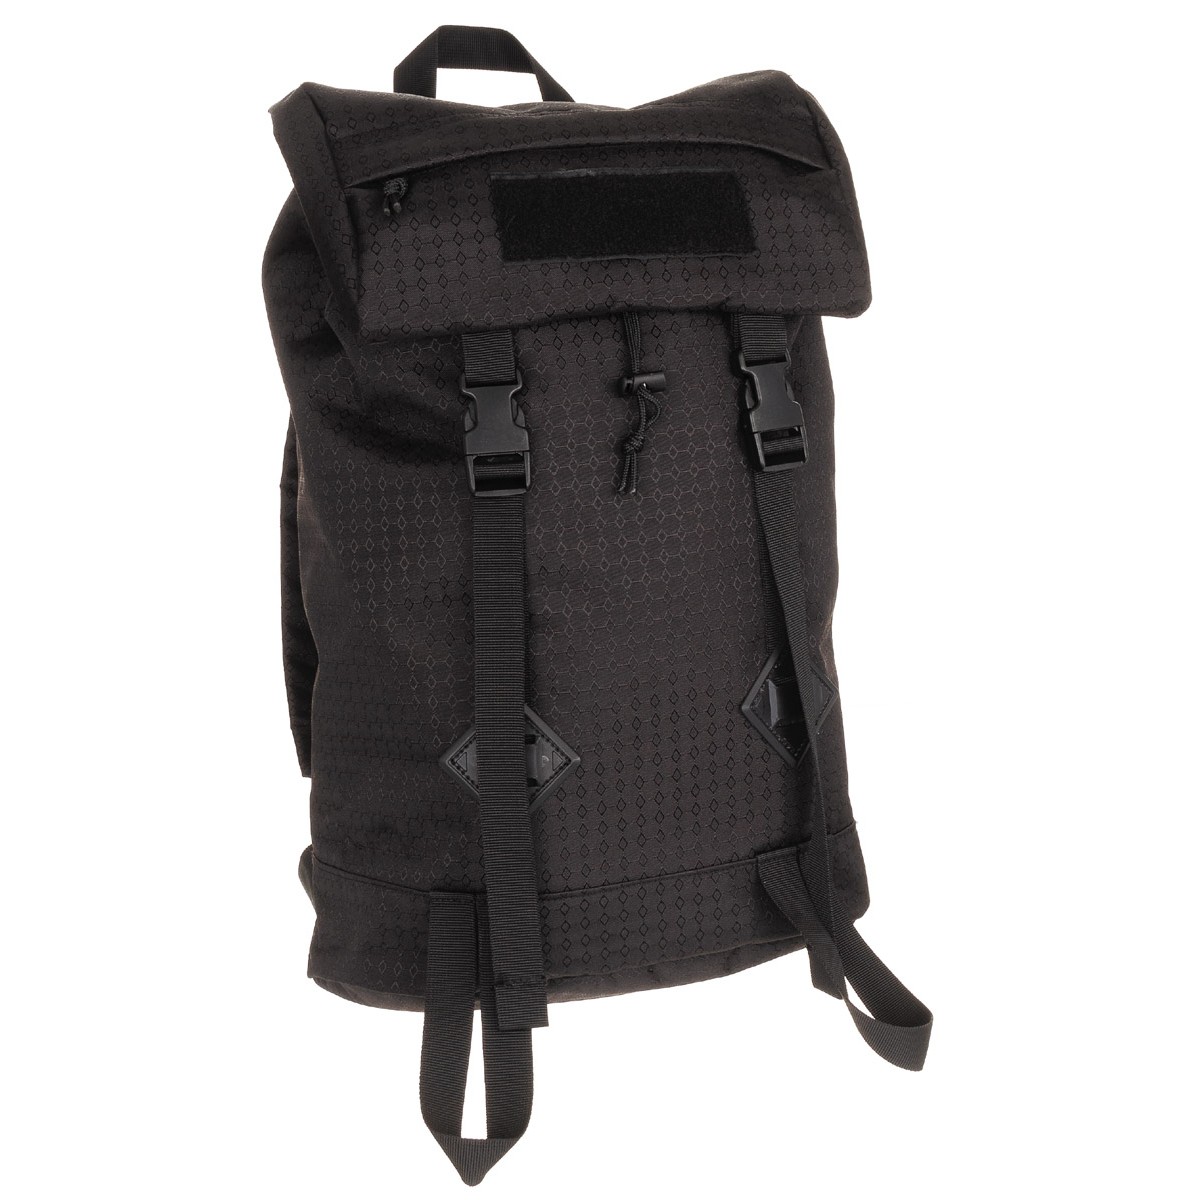 Stylish Outdoor City Backpack Bag "Bote" OctaTac 25L - Black